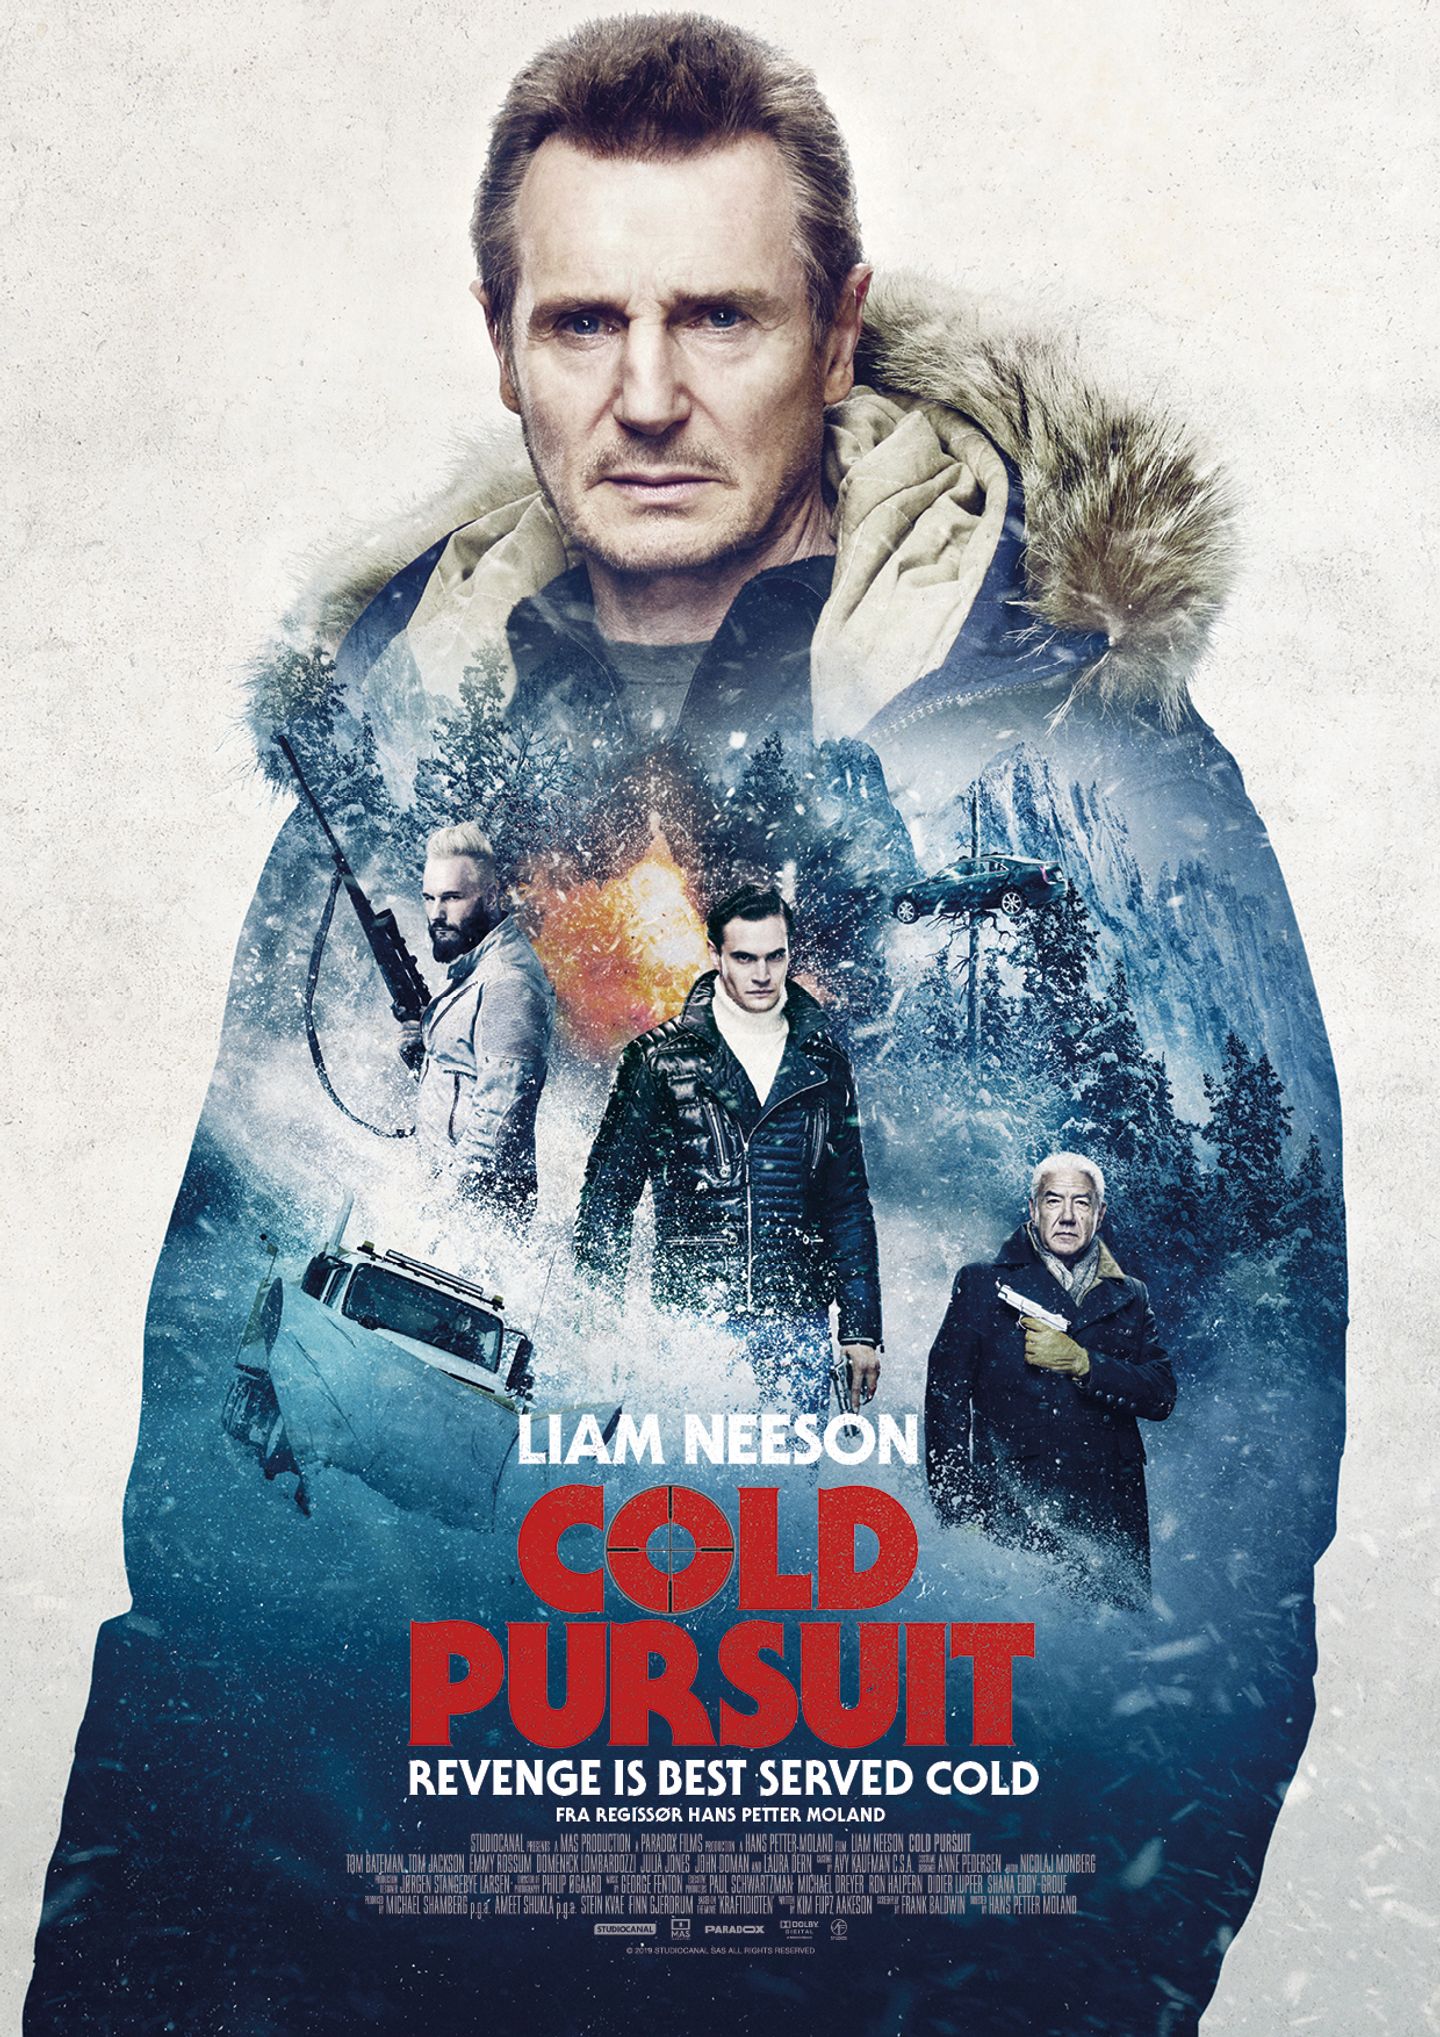 Plakat for 'Cold Pursuit'